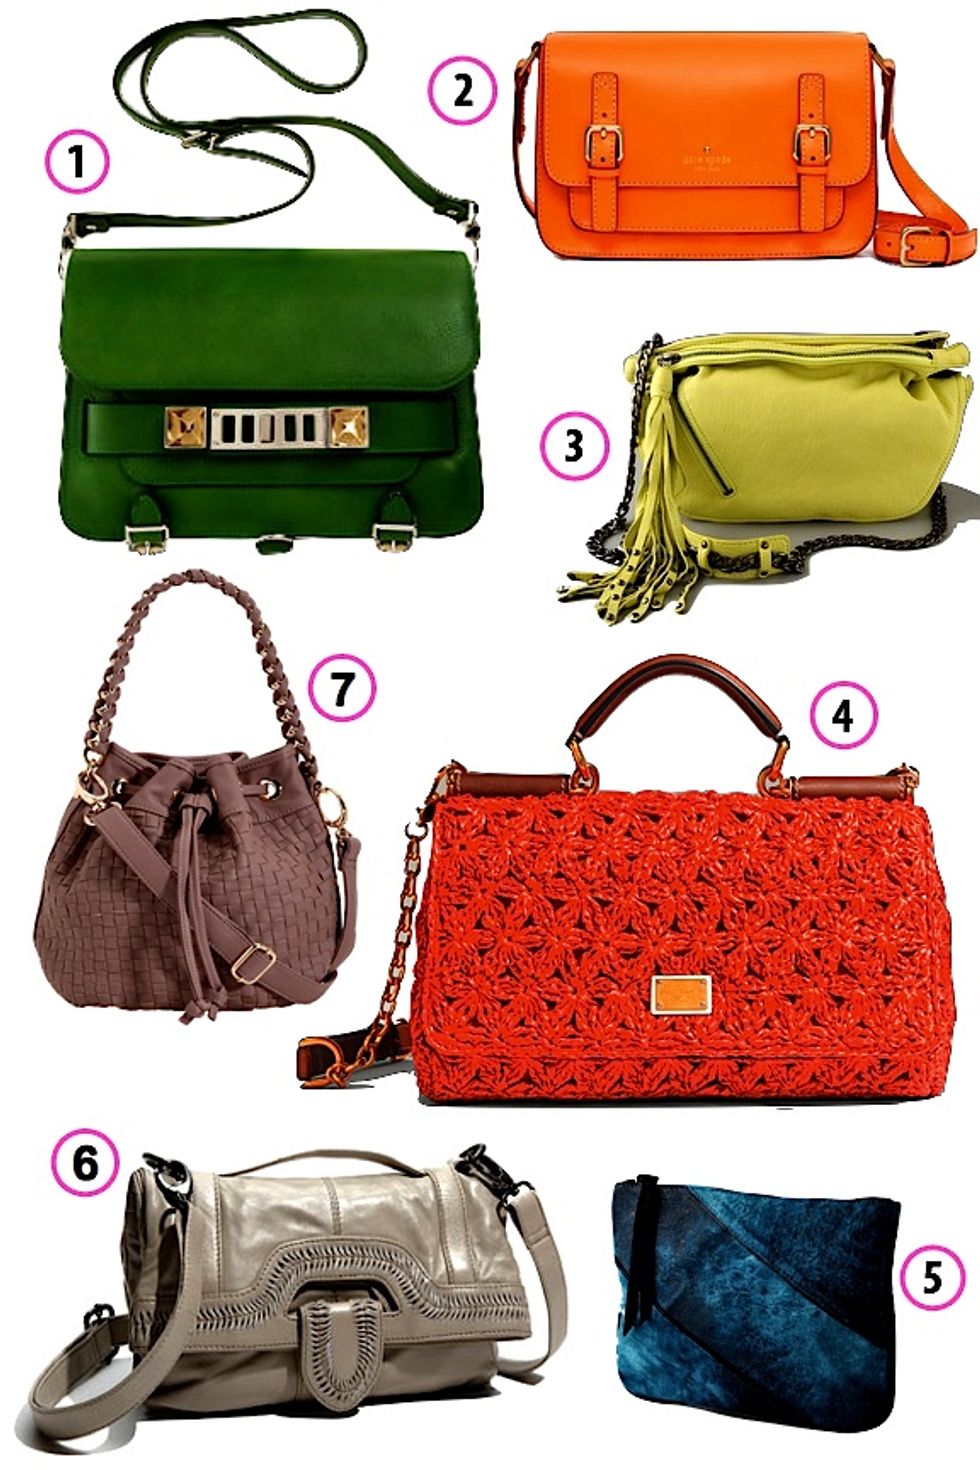 Look of the Week: Spring Splurge, 7 Colorful Crossbody Bags